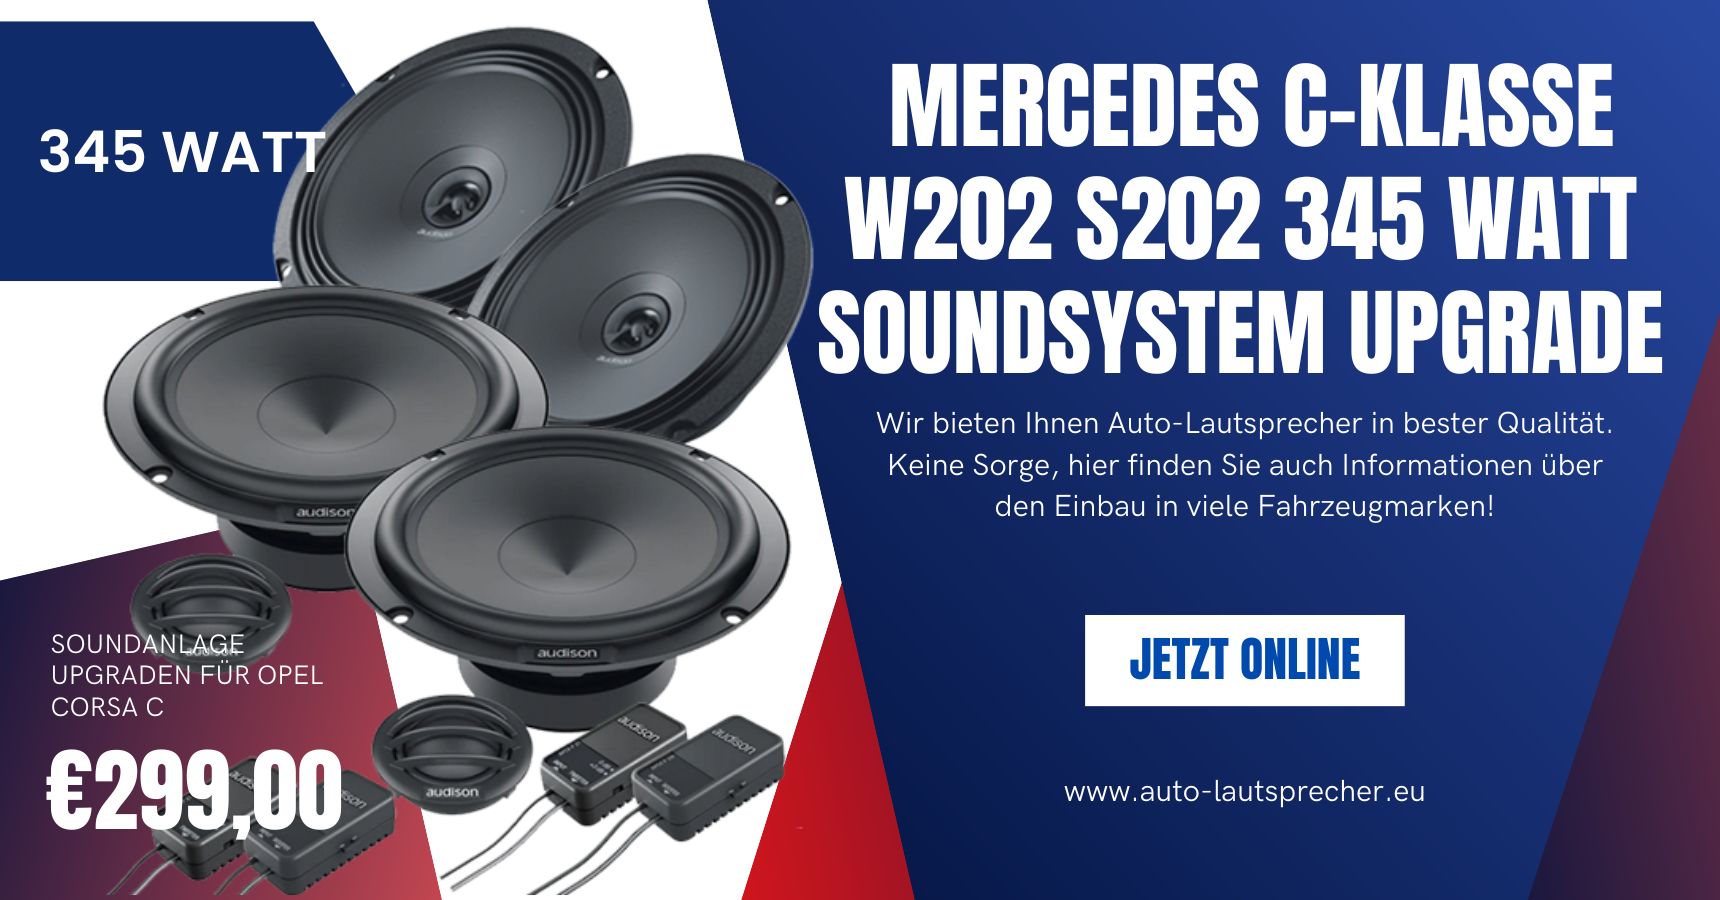 Mercedes C-Klasse W202 S202 345 Watt Soundsystem Upgrade